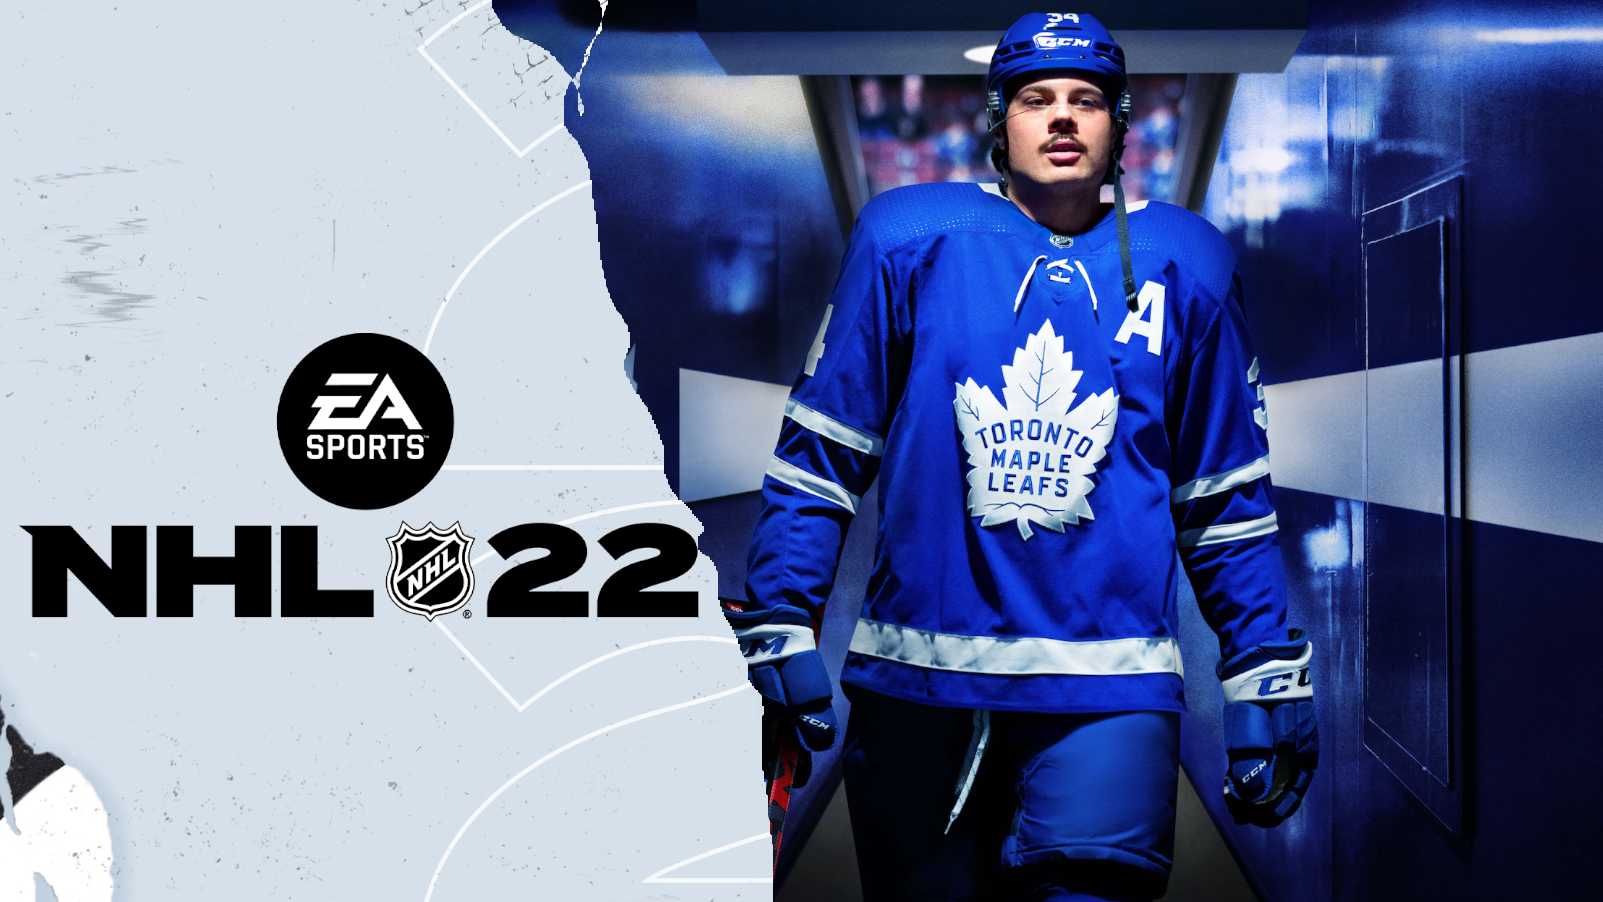 NHL 22 EA Sports launcht Eishockey-Spiel mit Frostbite-Engine und Superstar-X-Factor